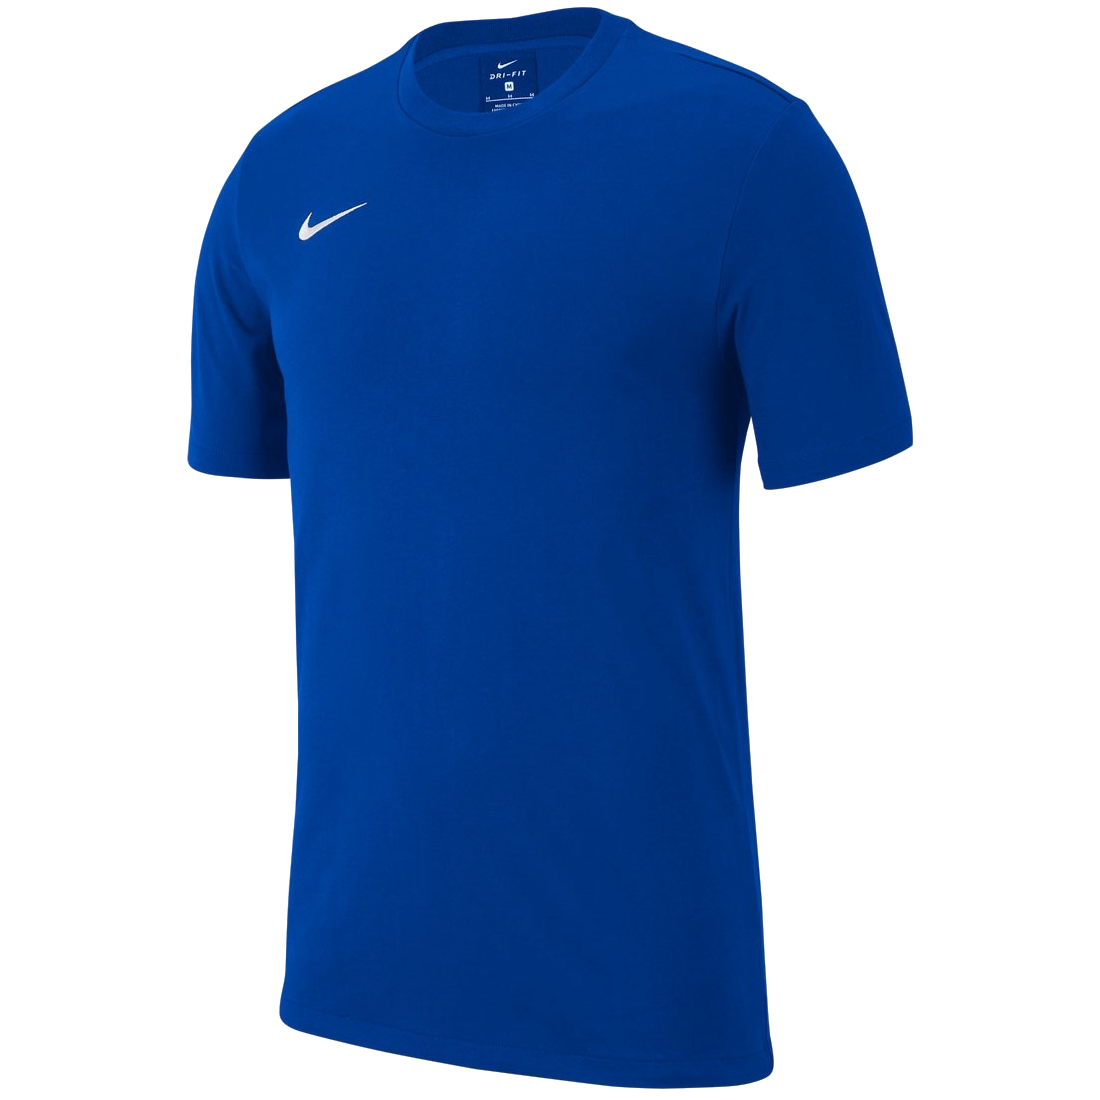 Nike Team Club 19 modrá/bílá UK Junior L Dětské